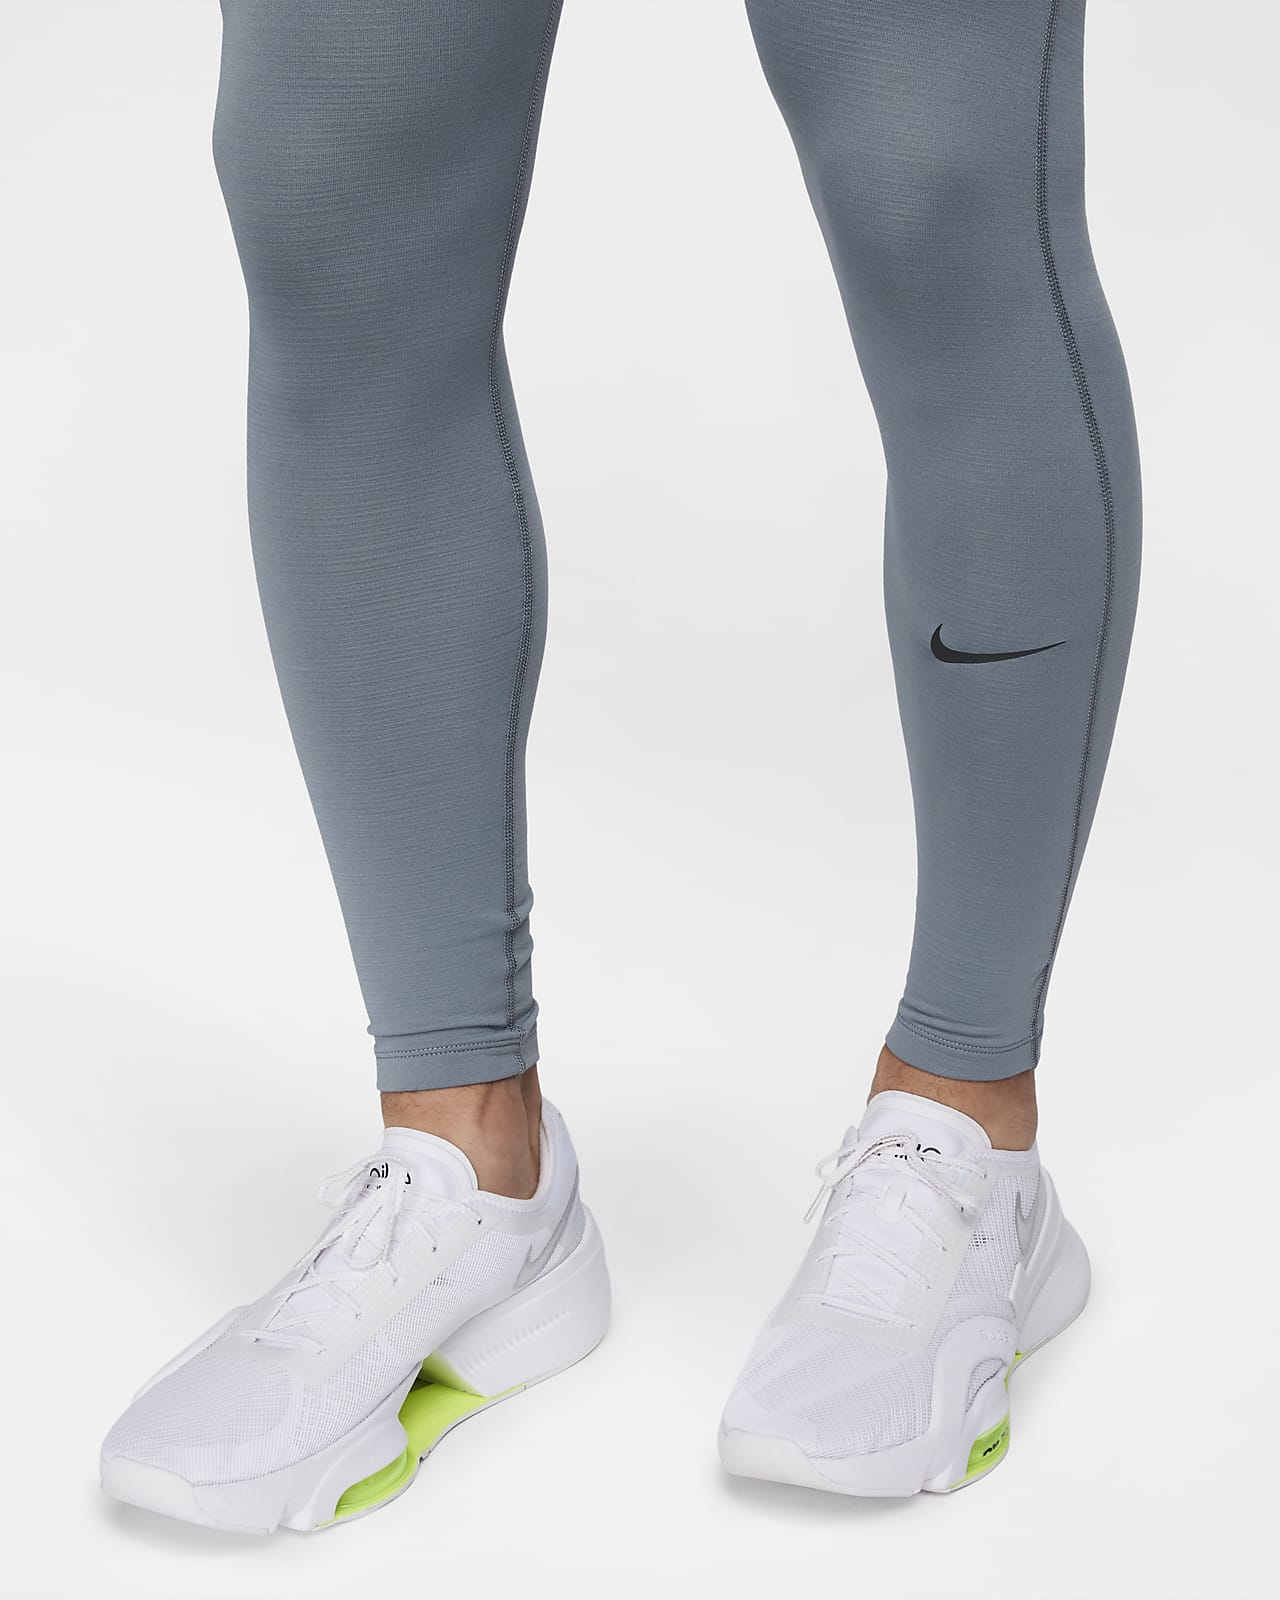 Legging homme Nike Pro gris sur